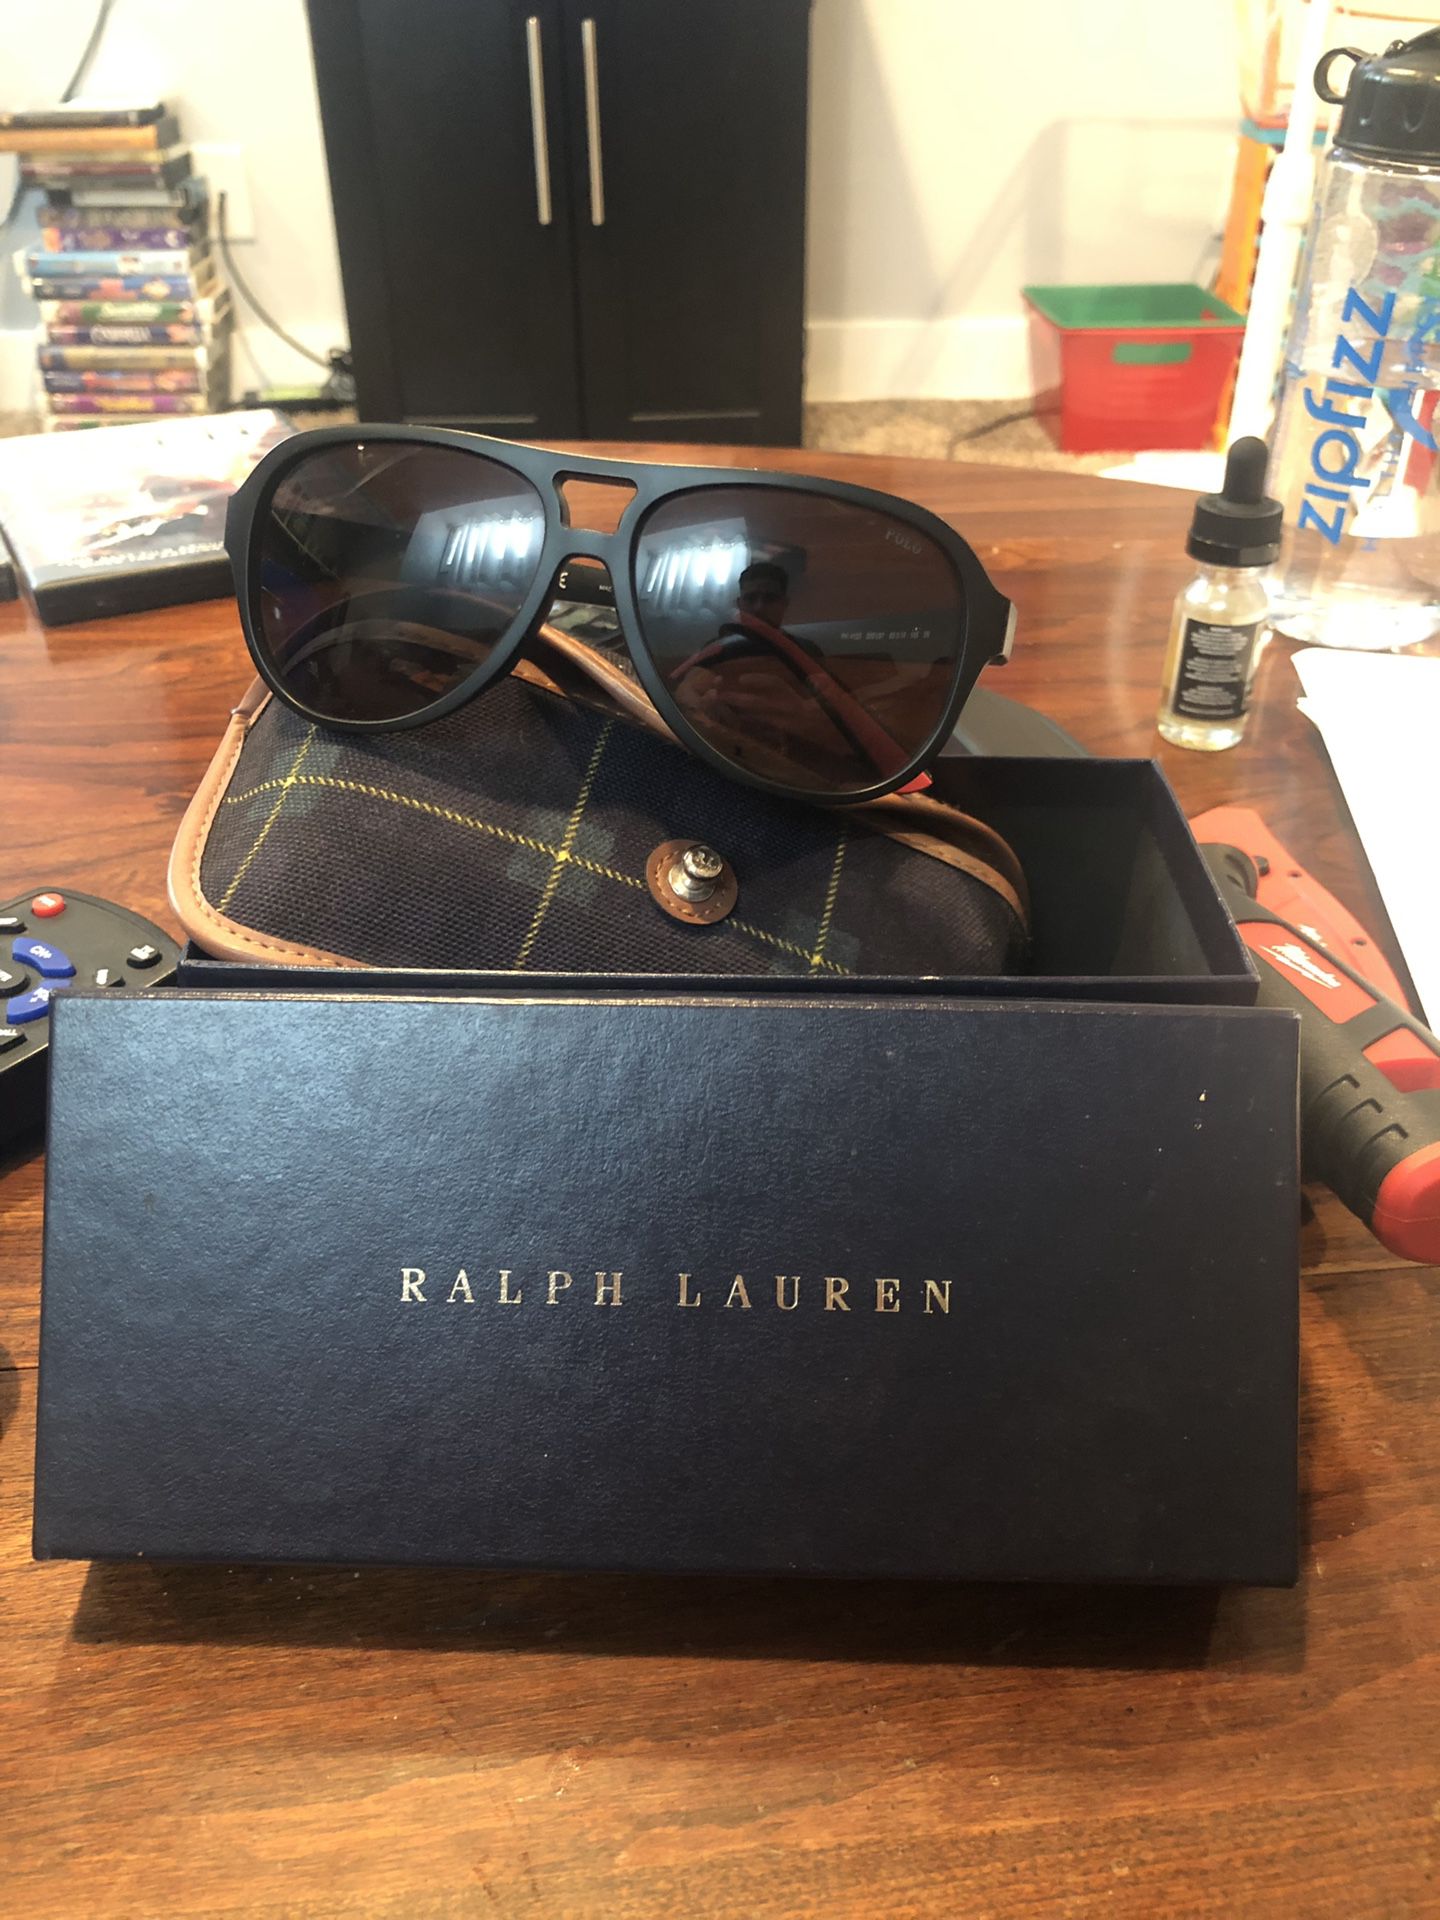 Ralph Lauren Polo sunglasses w/ case and box